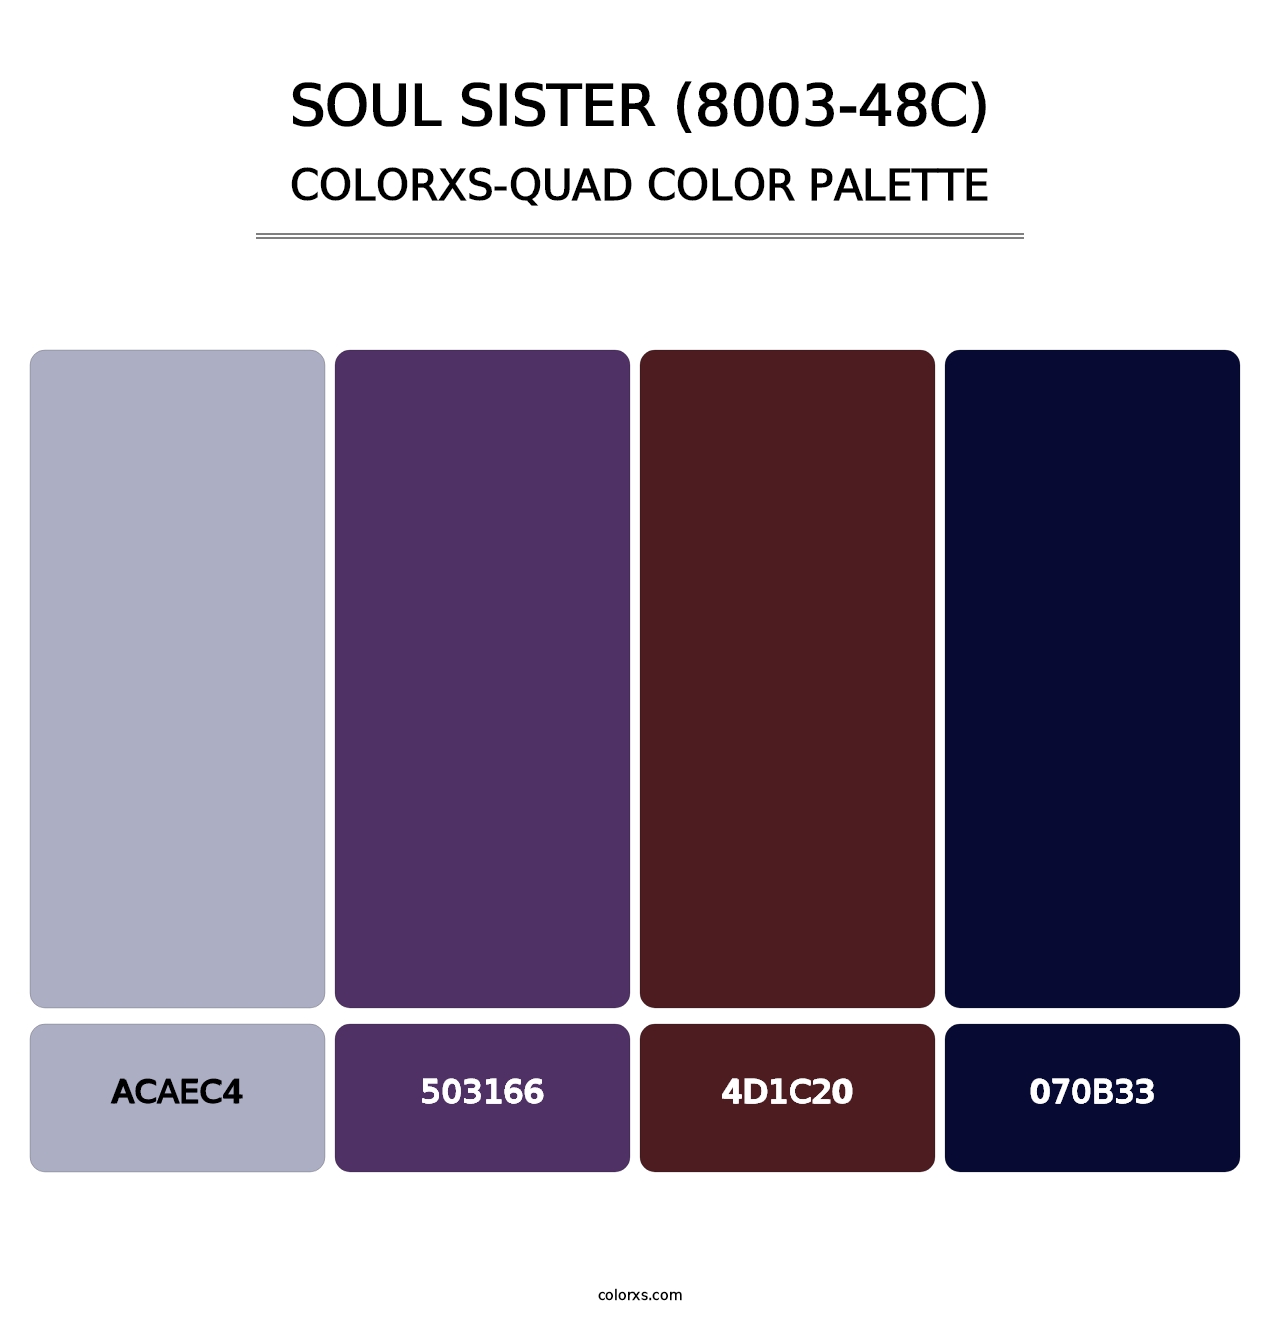 Soul Sister (8003-48C) - Colorxs Quad Palette